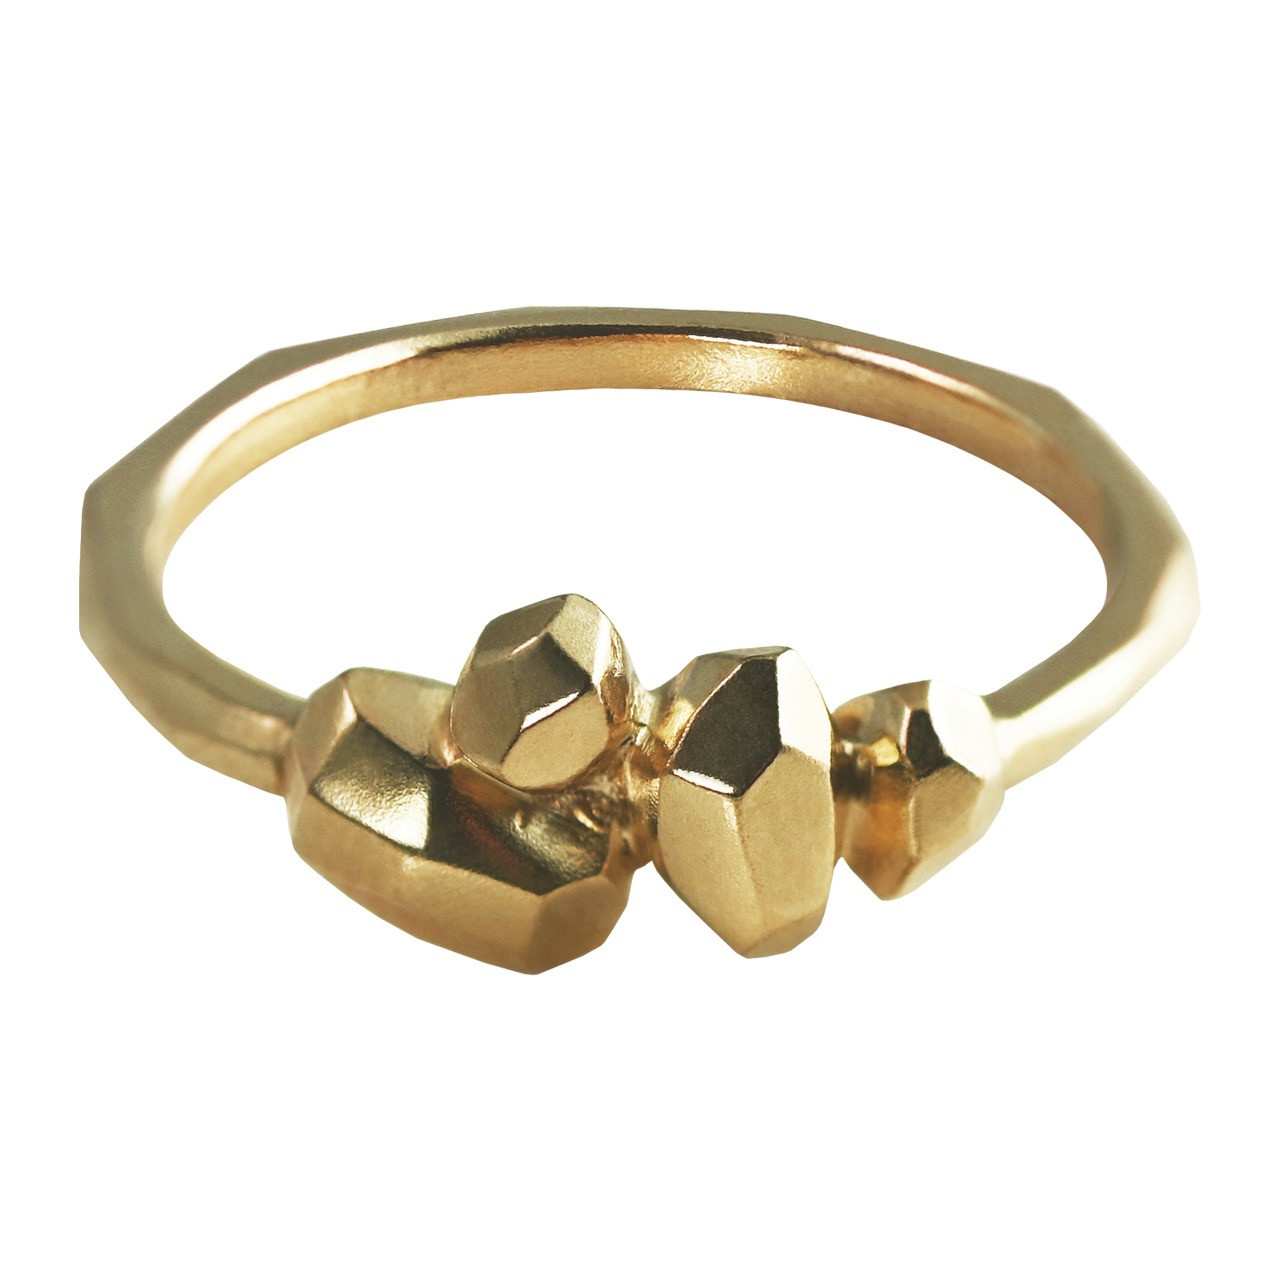 Gea N4 9ct Gold Ring, Maria Manola, tomfoolery